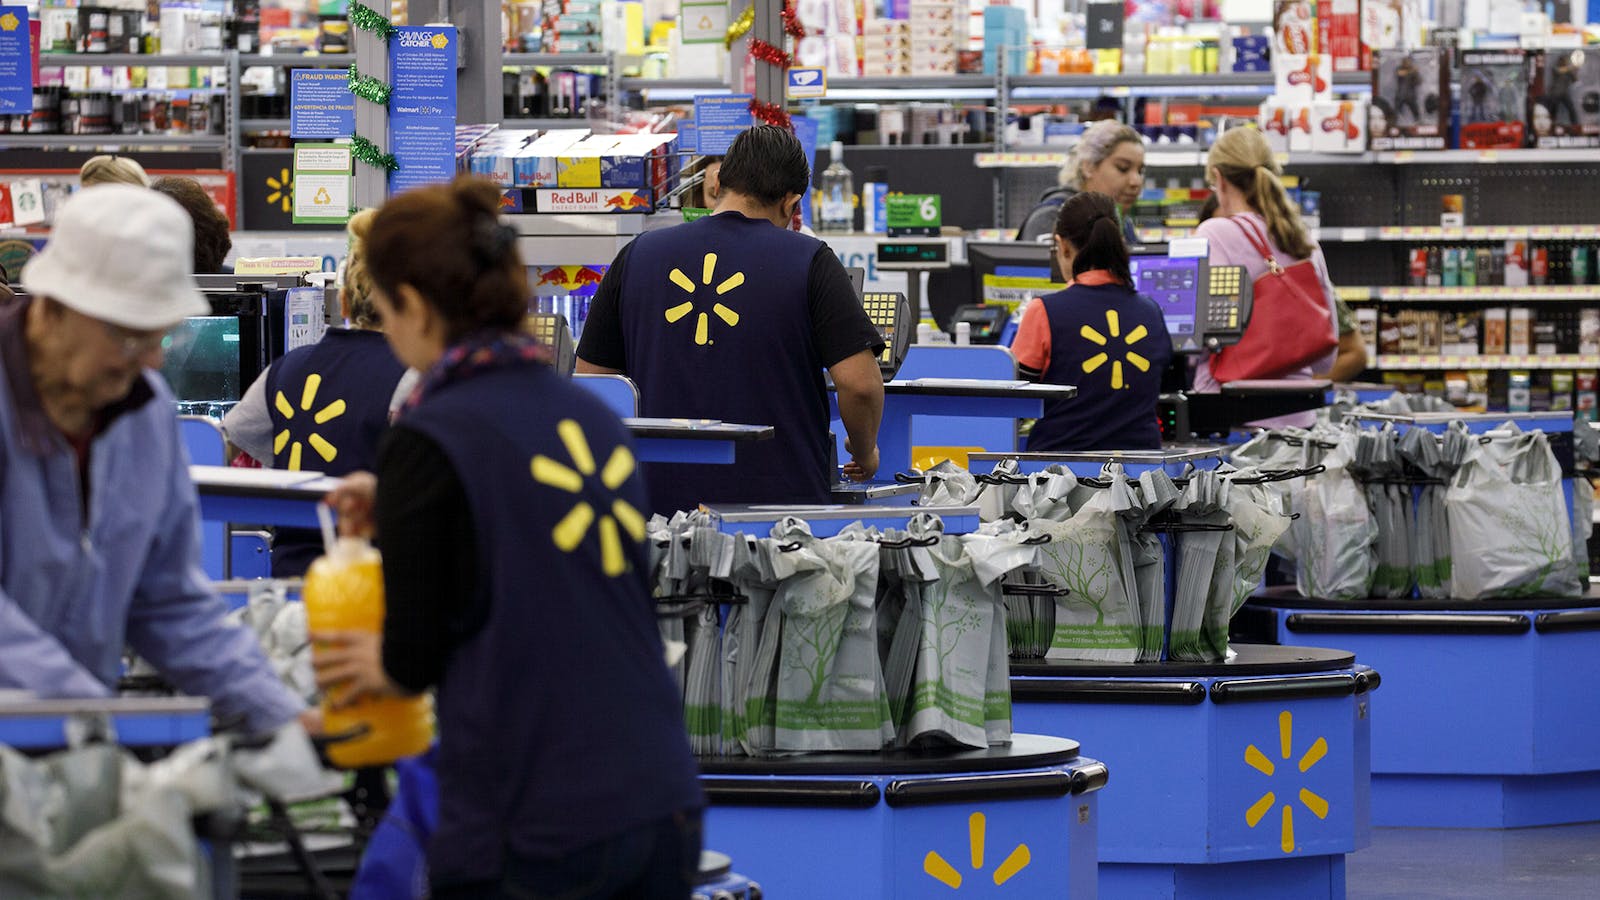 6 nhóm sản phẩm Walmart tìm khi đến TP.HCM, toàn ngành hàng tỷ USD của doanh nghiệp Việt - Ảnh 1.